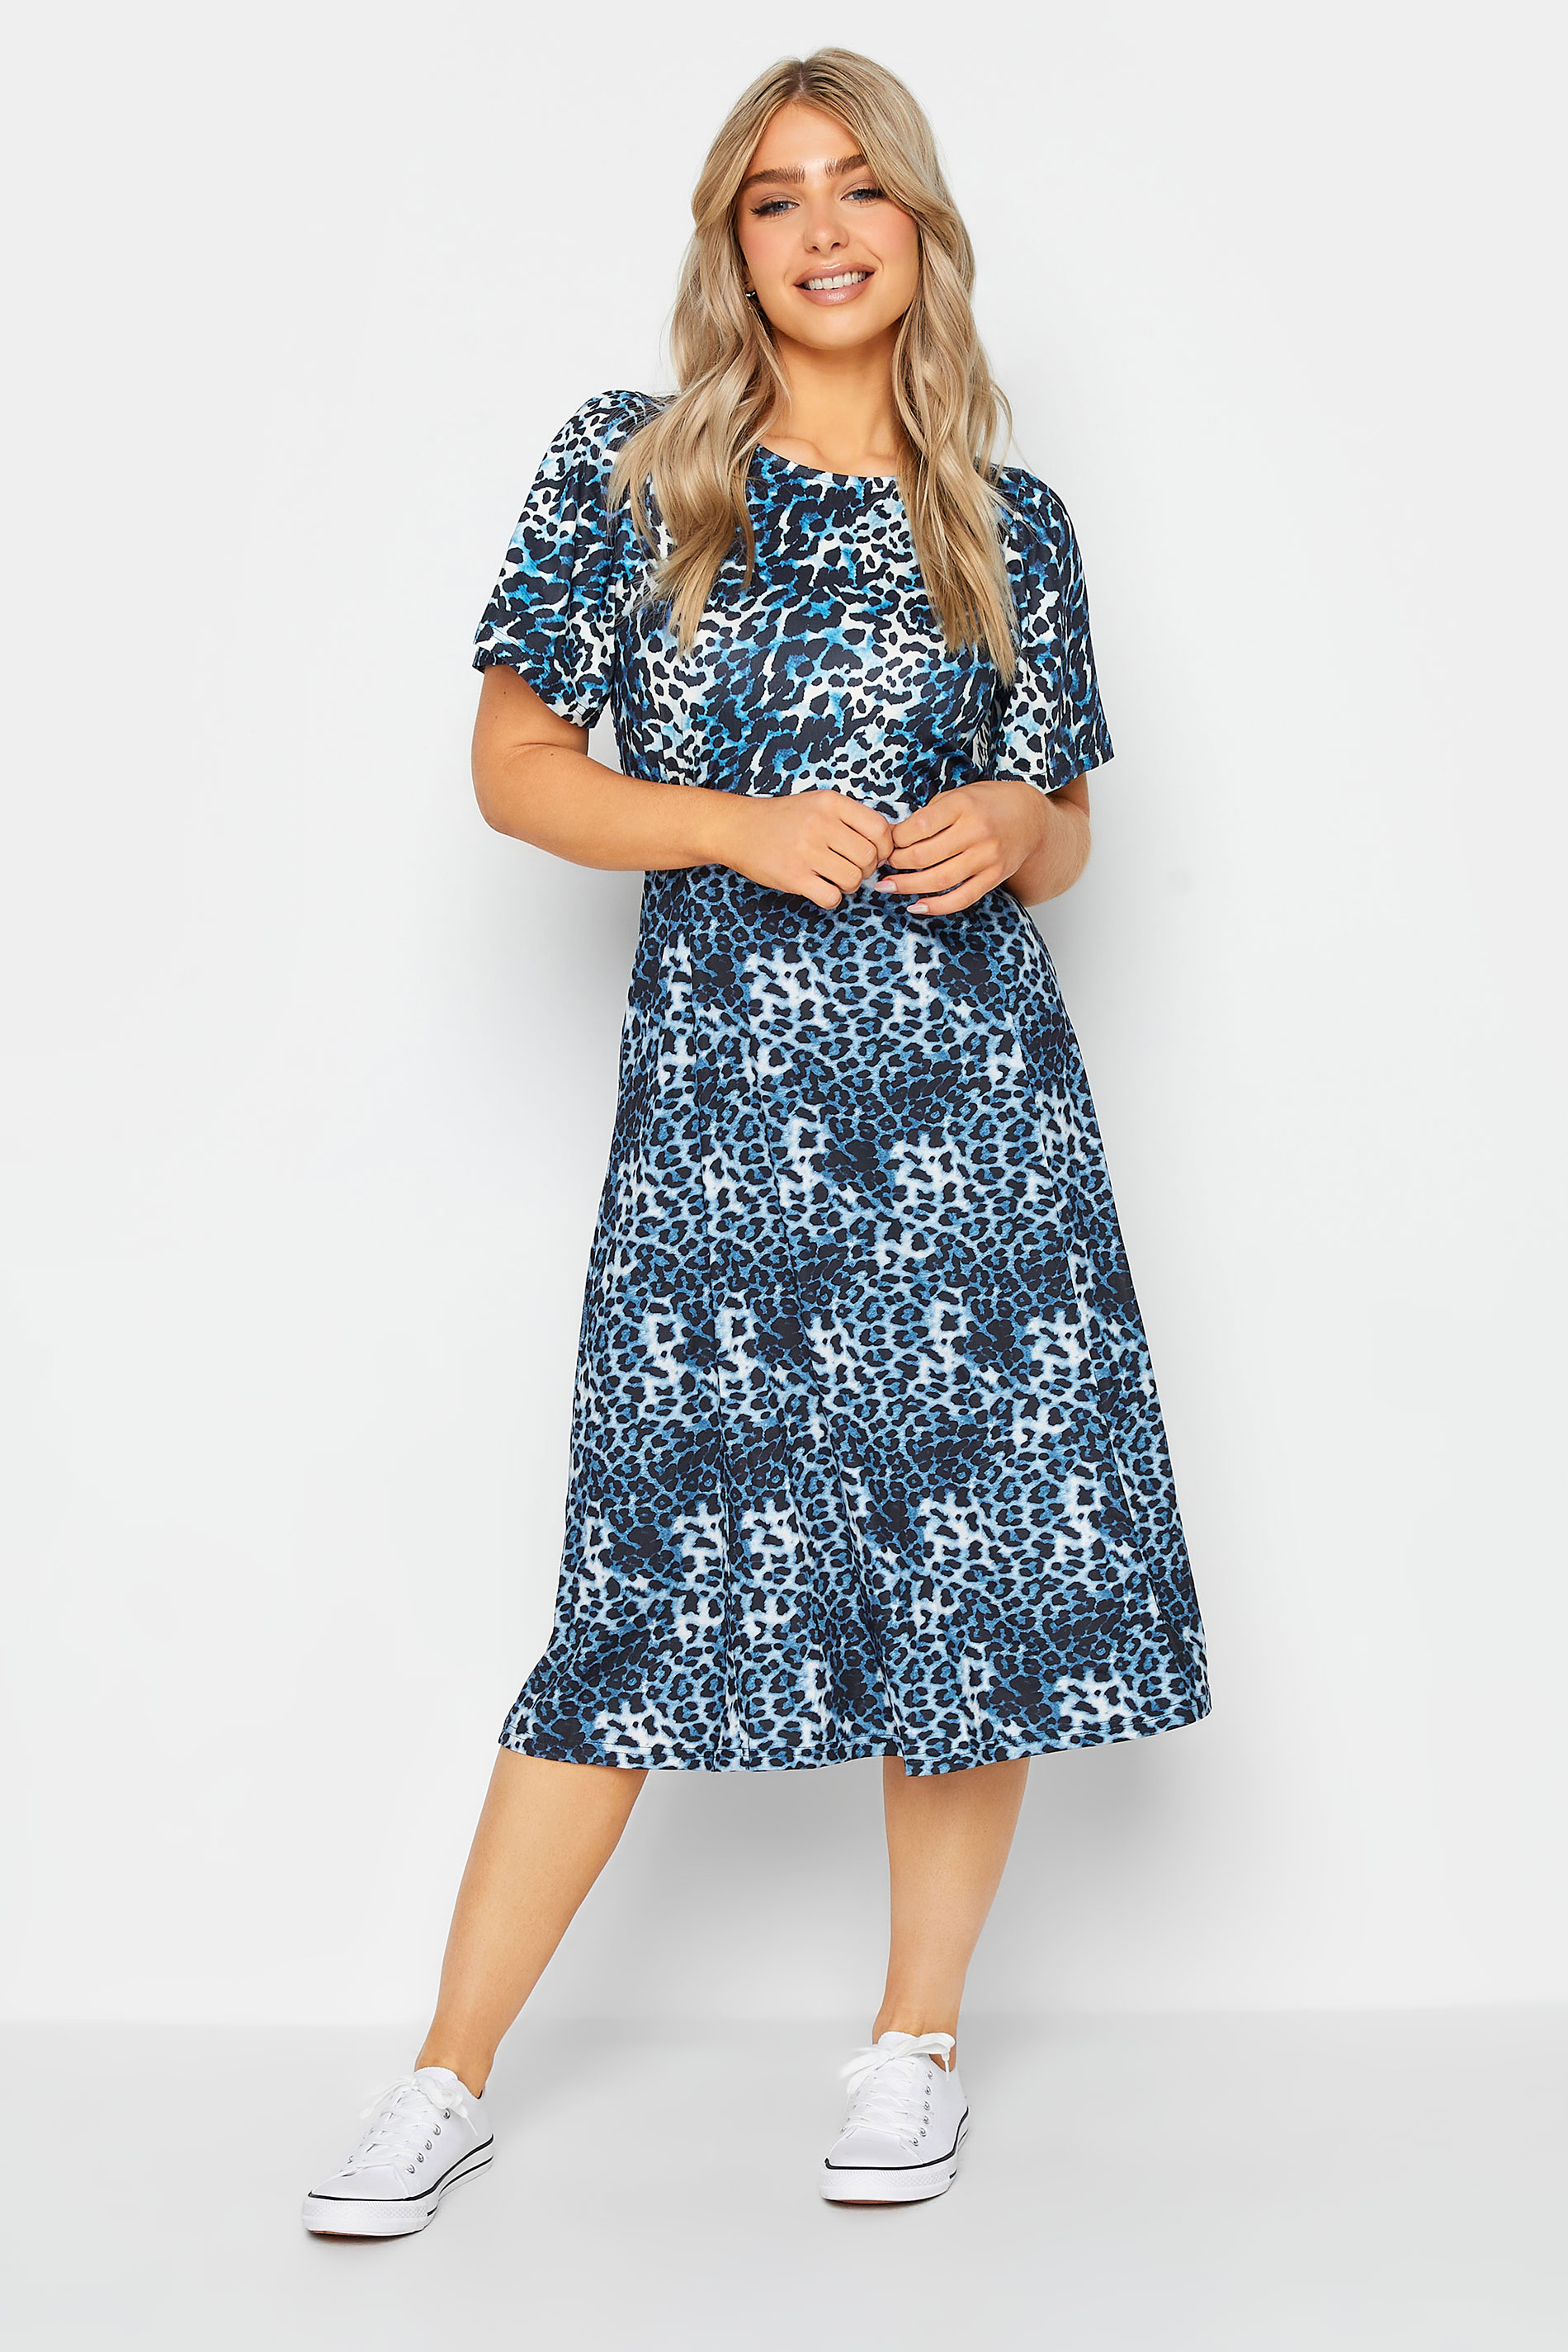 M&Co Blue Leopard Print Midi Dress | M&Co 2